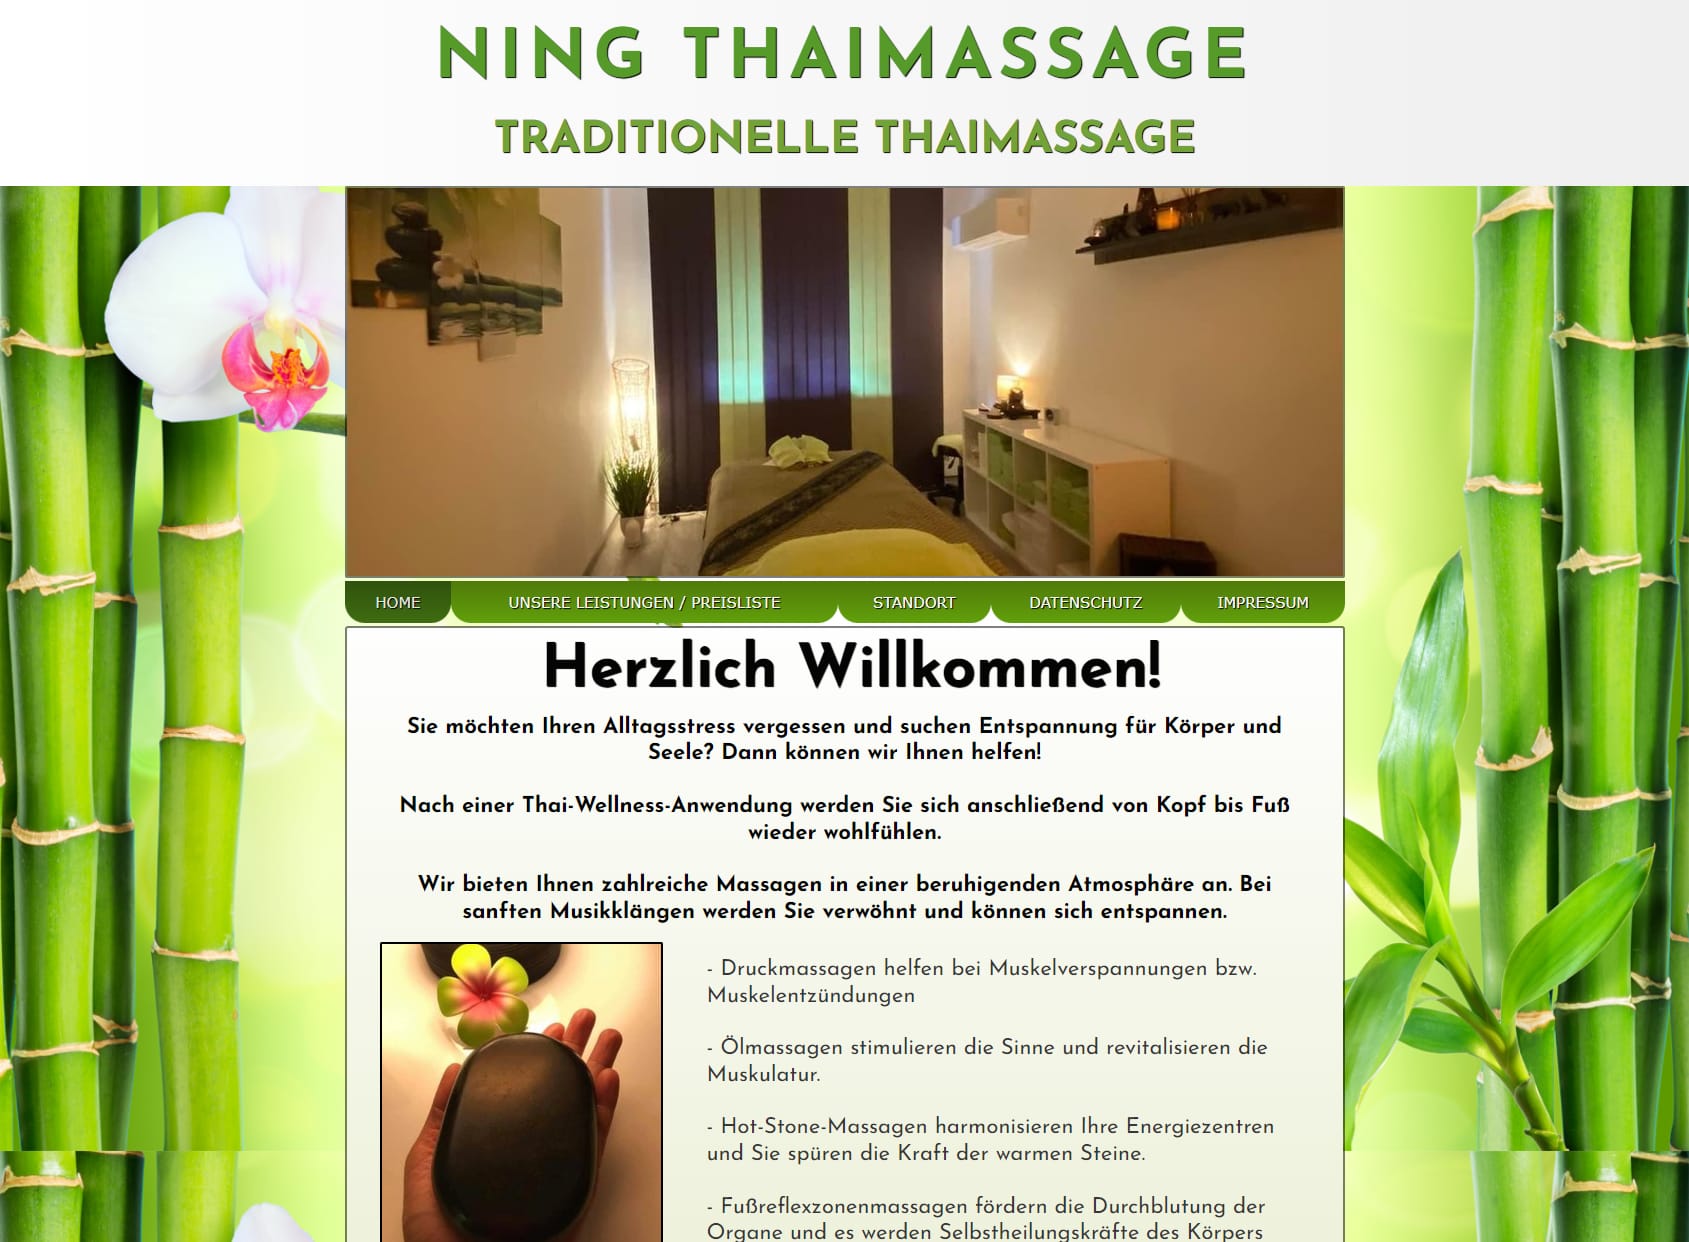 Ning Thaimassage